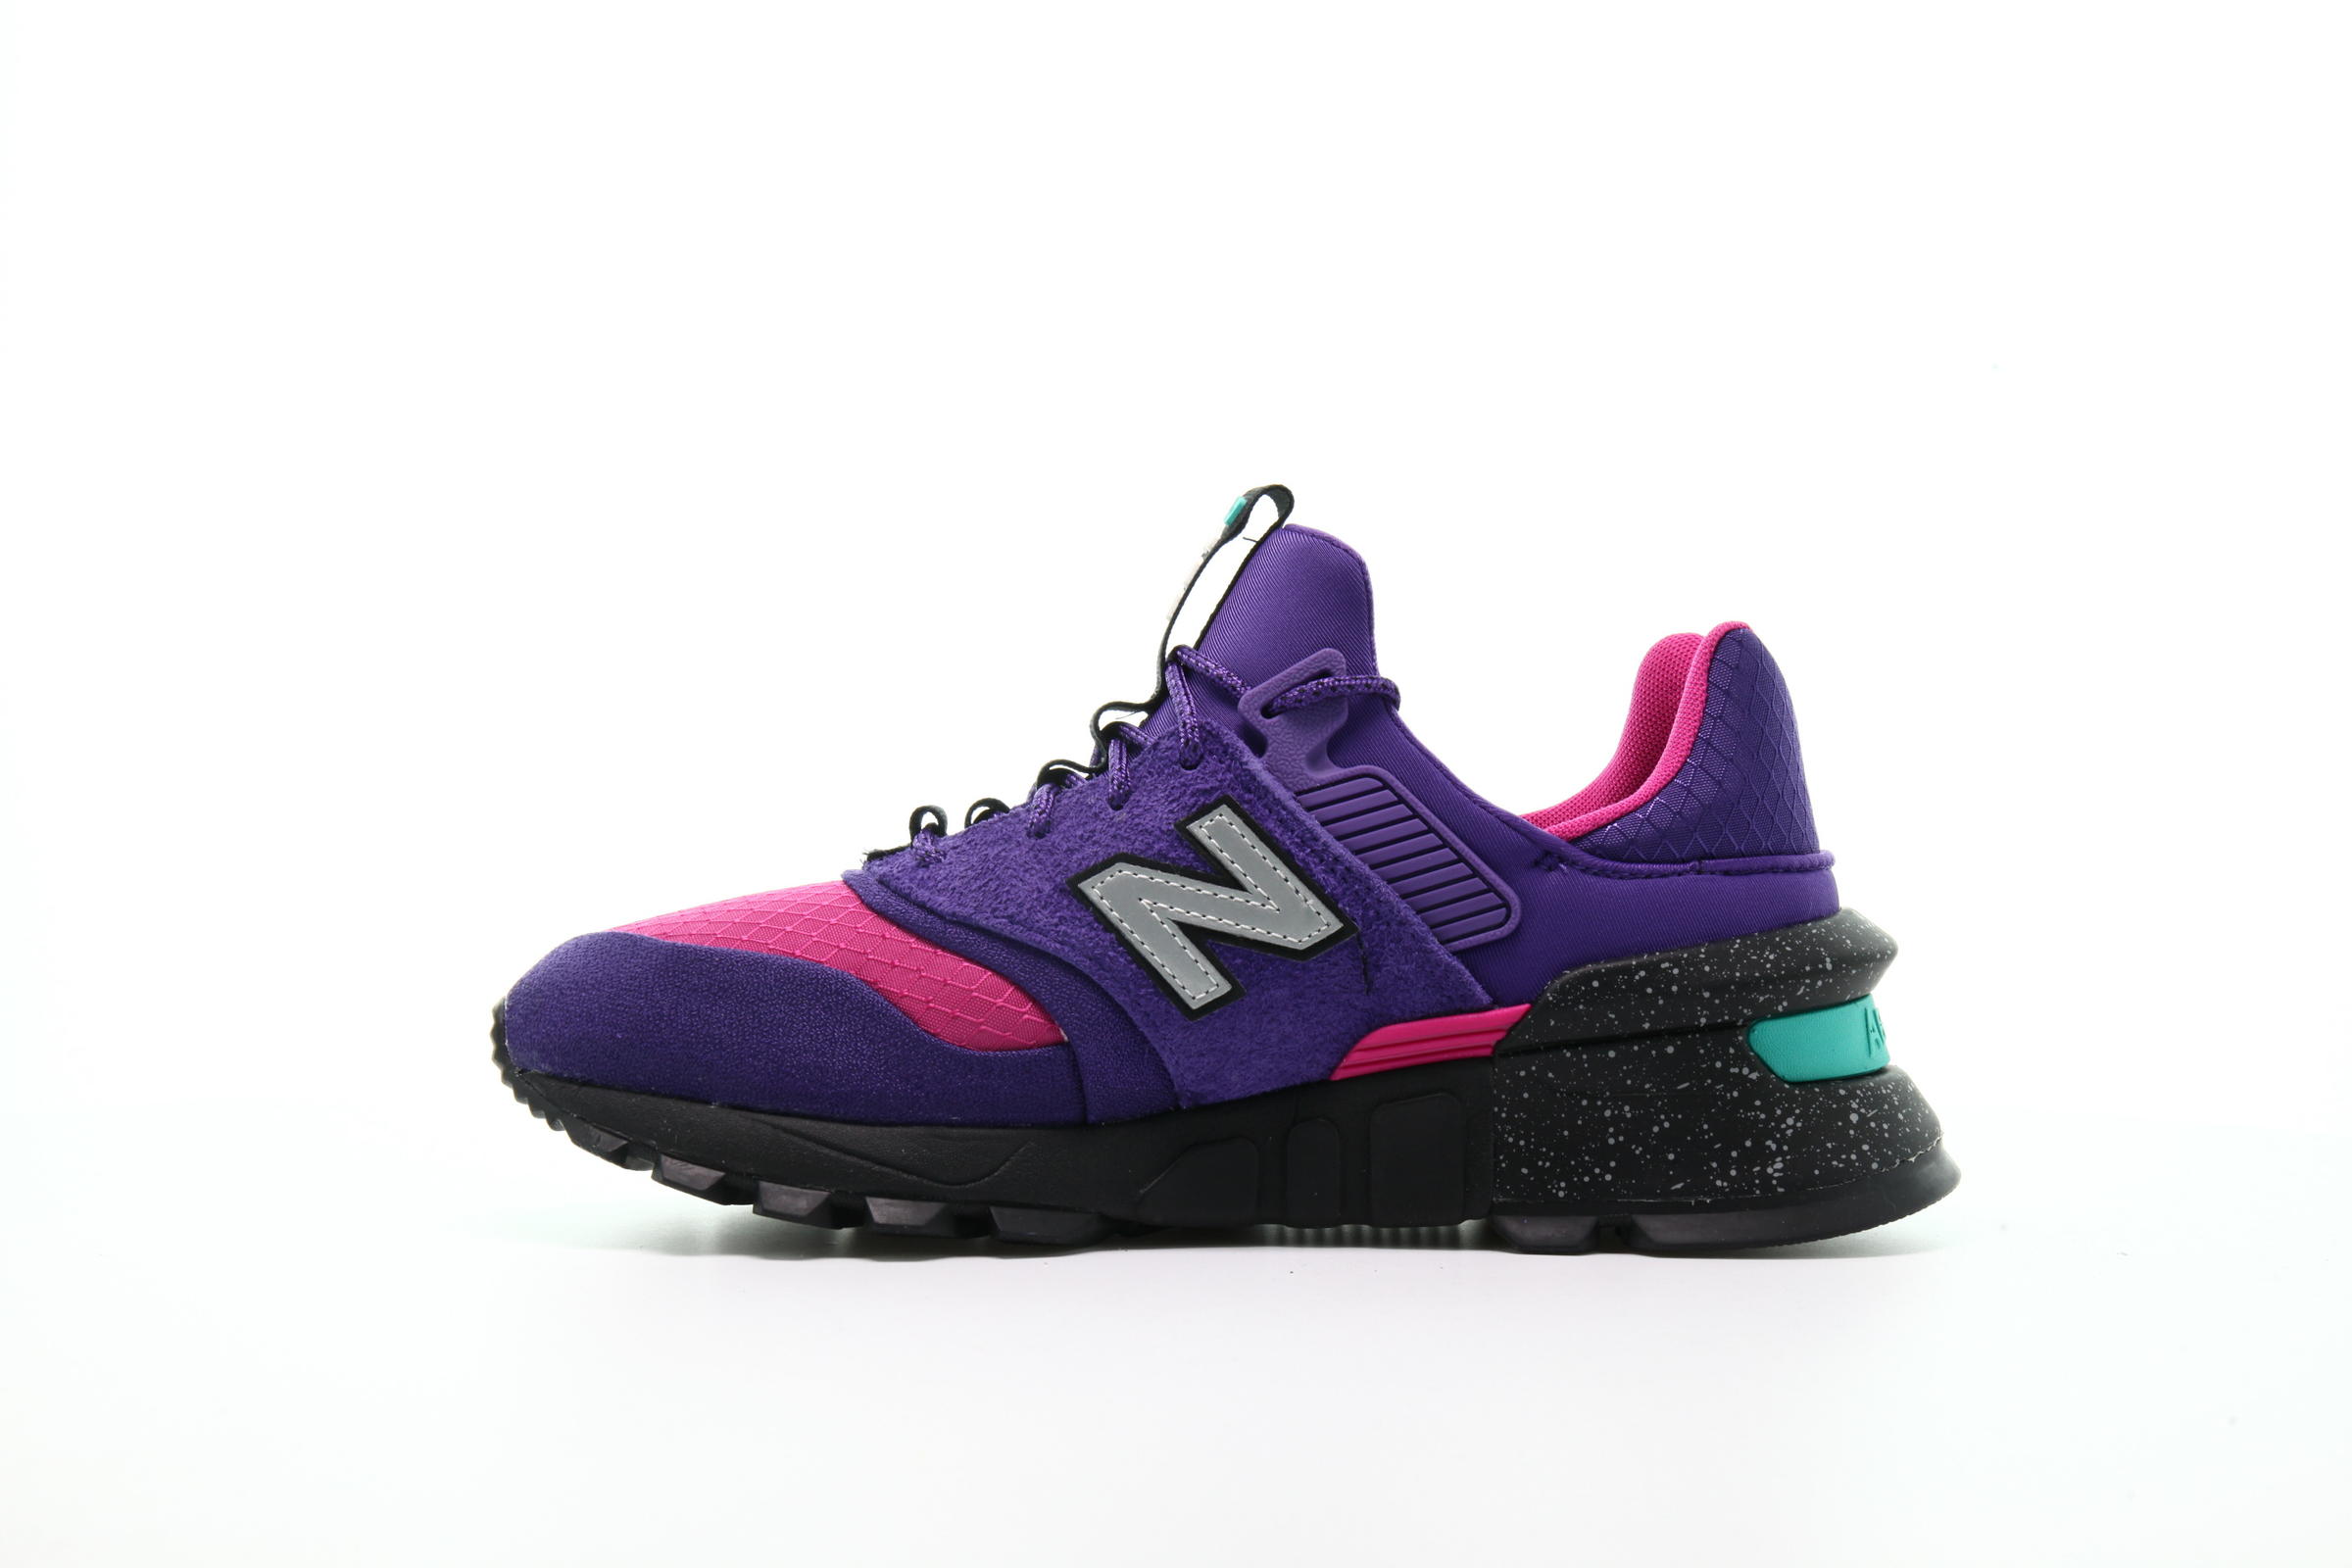 New Balance MS 997 SA "Purple"